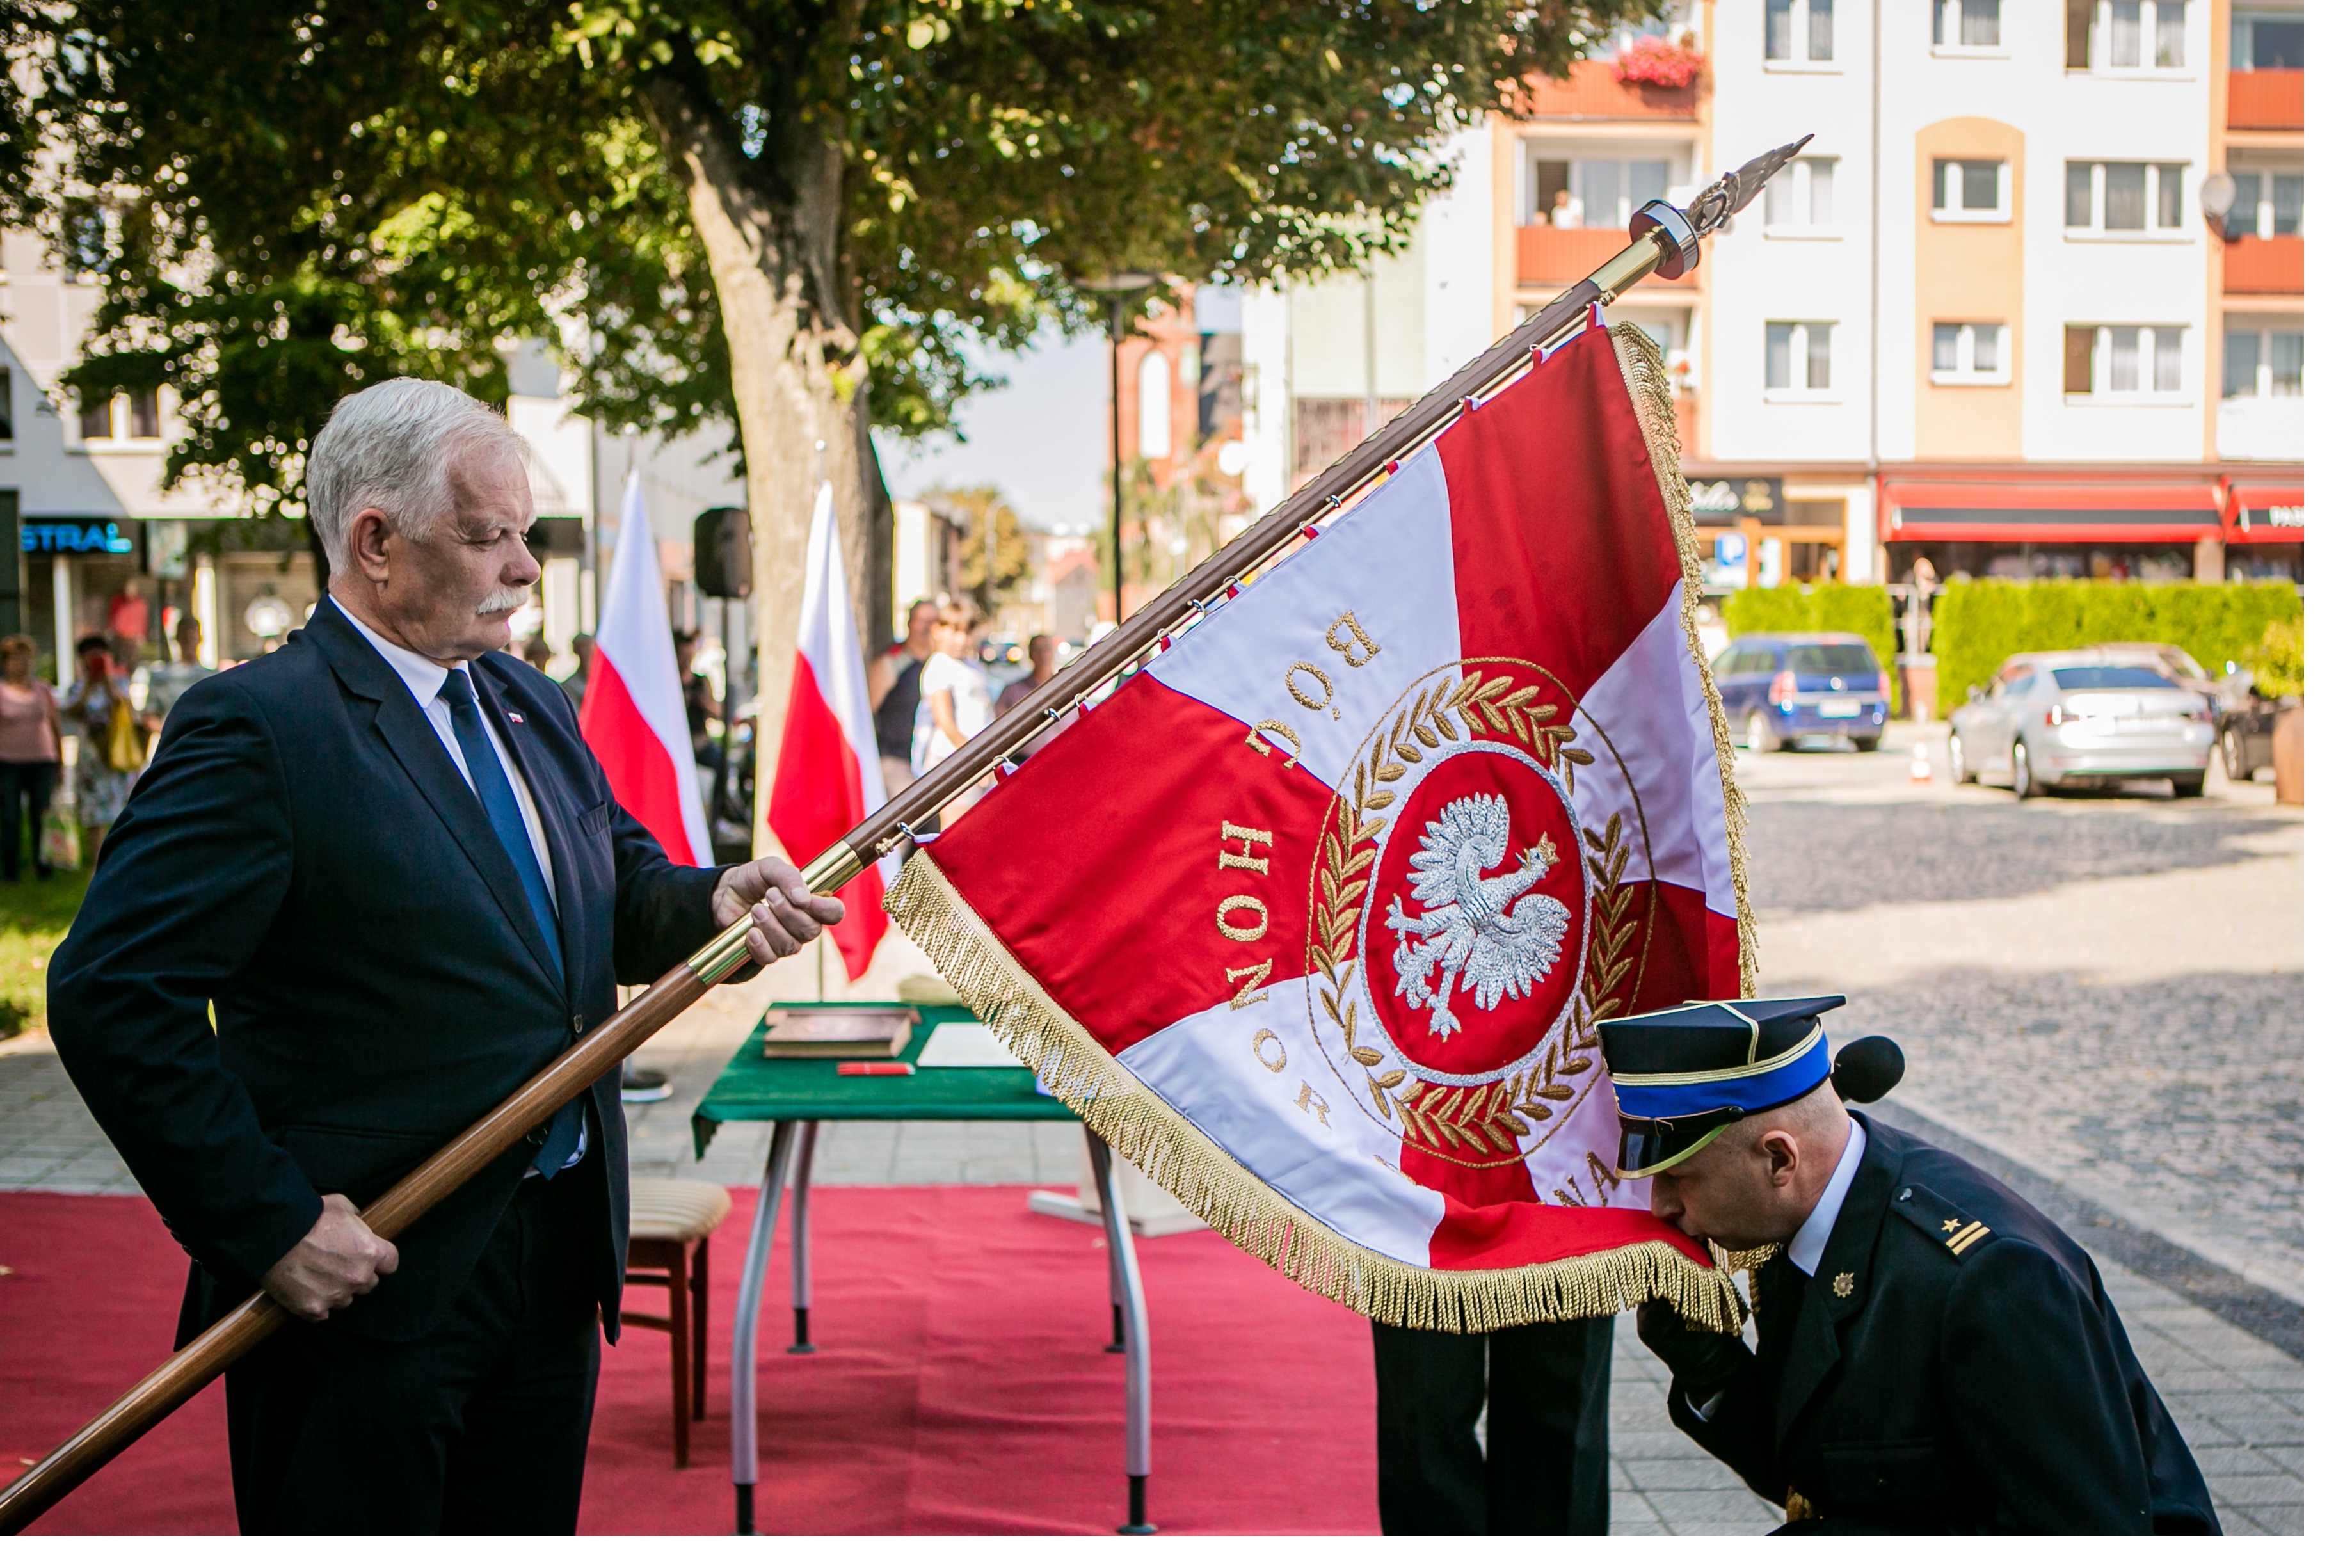 Wręczenie sztandaru dla Komendy Powiatowej Państwowej Straży Pożarnej w Lęborku